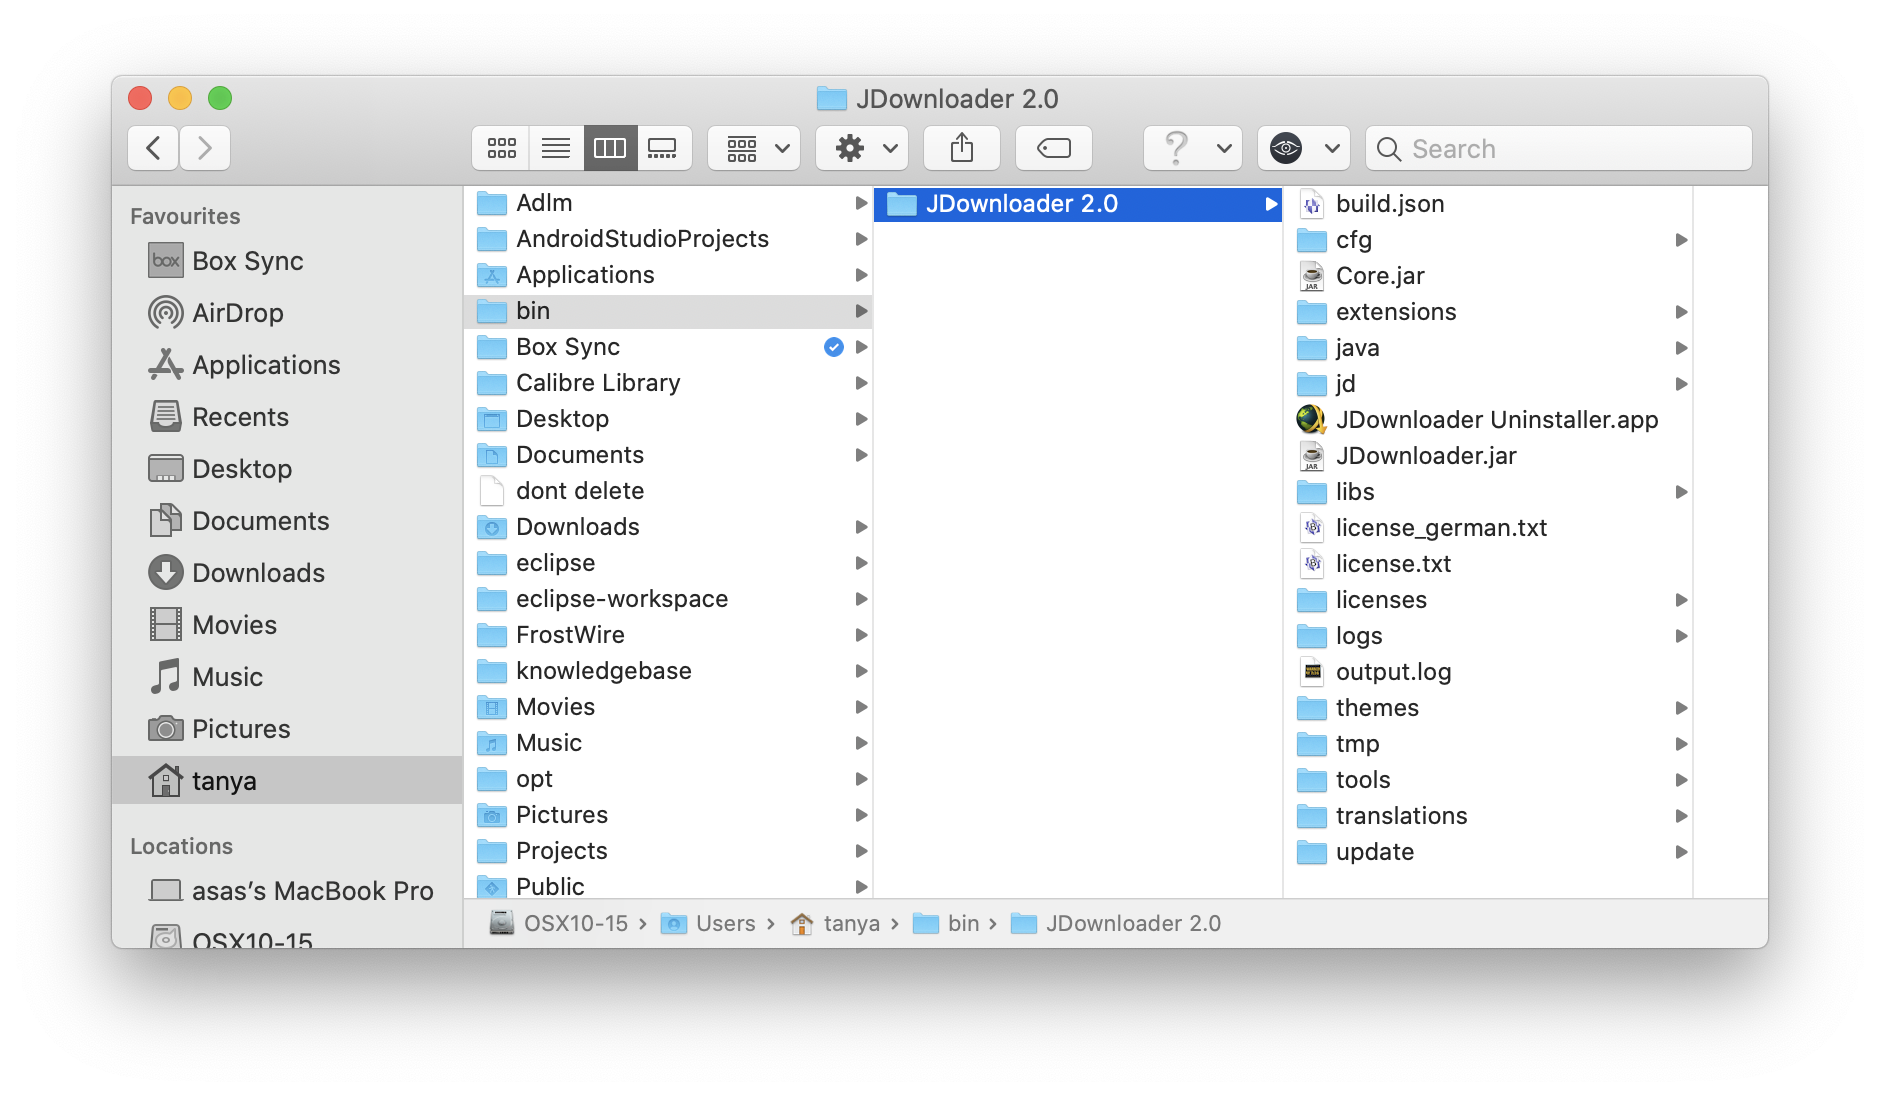 jdownloader for mac